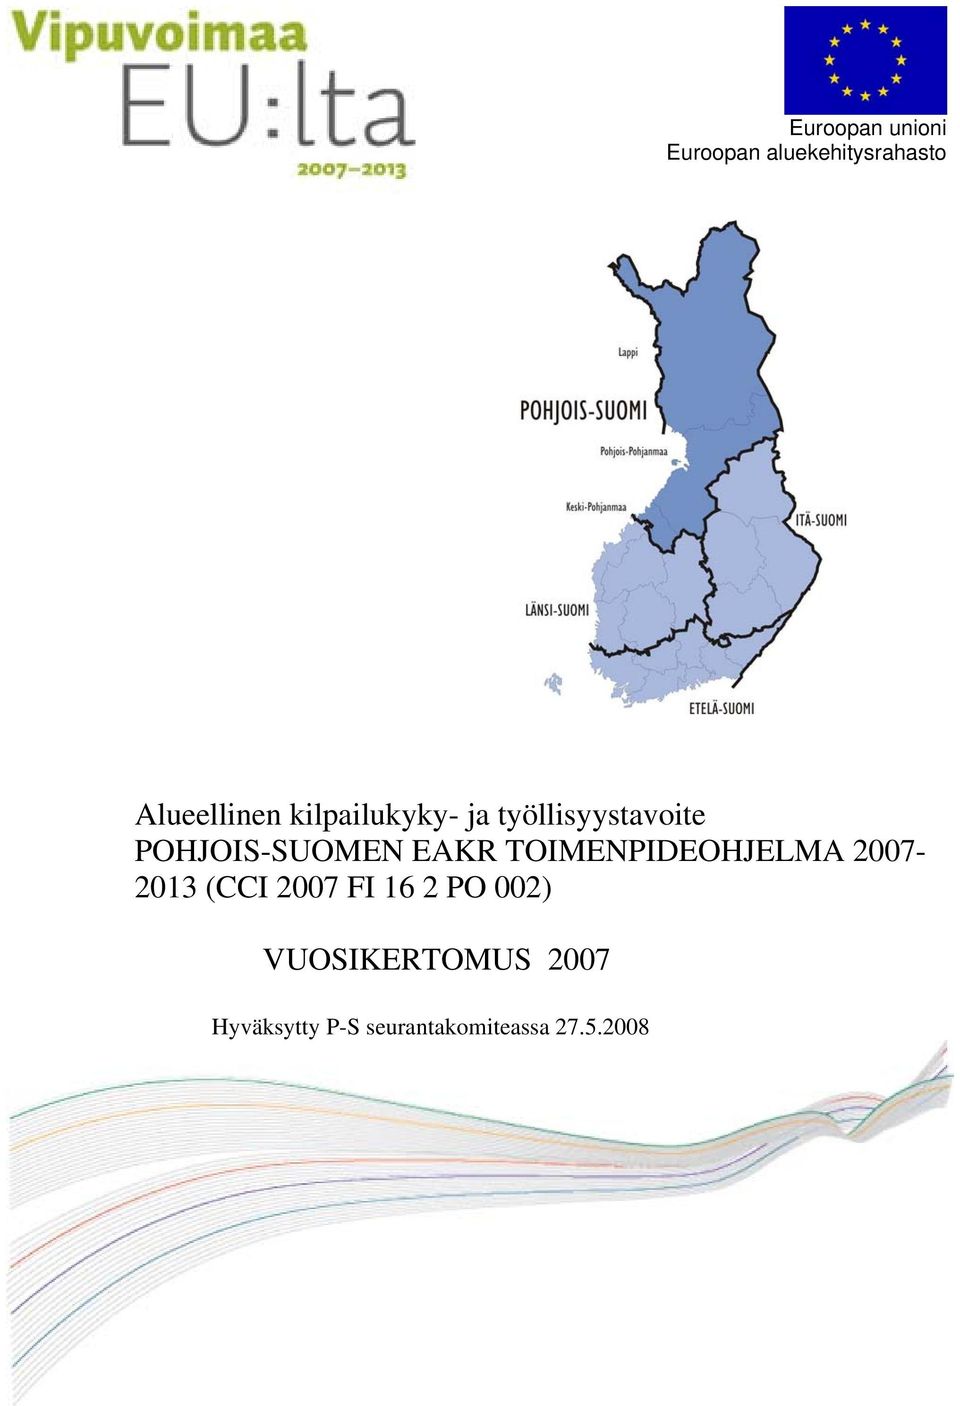 TOIMENPIDEOHJELMA 2007-2013 (CCI 2007 FI 16 2 PO 002)